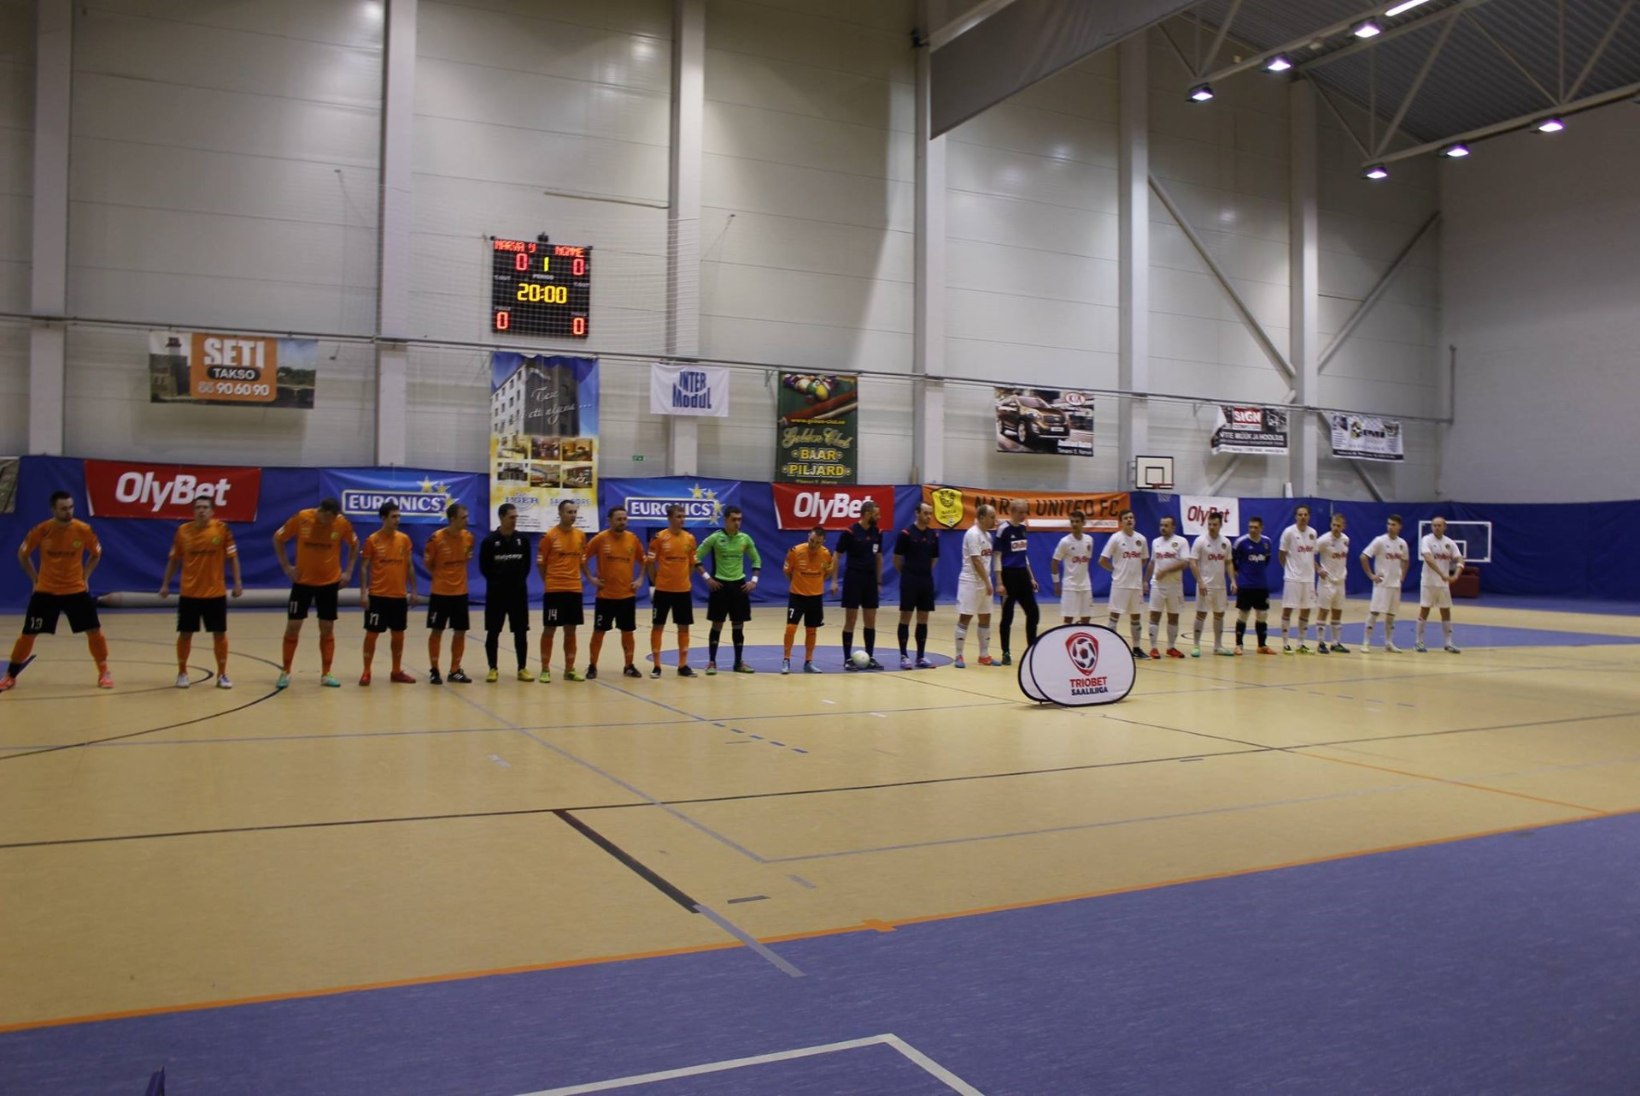 JÄRELVAADATAV | Saalijalgpalli EMV poolfinaal Nõmme Olybet - Narva United